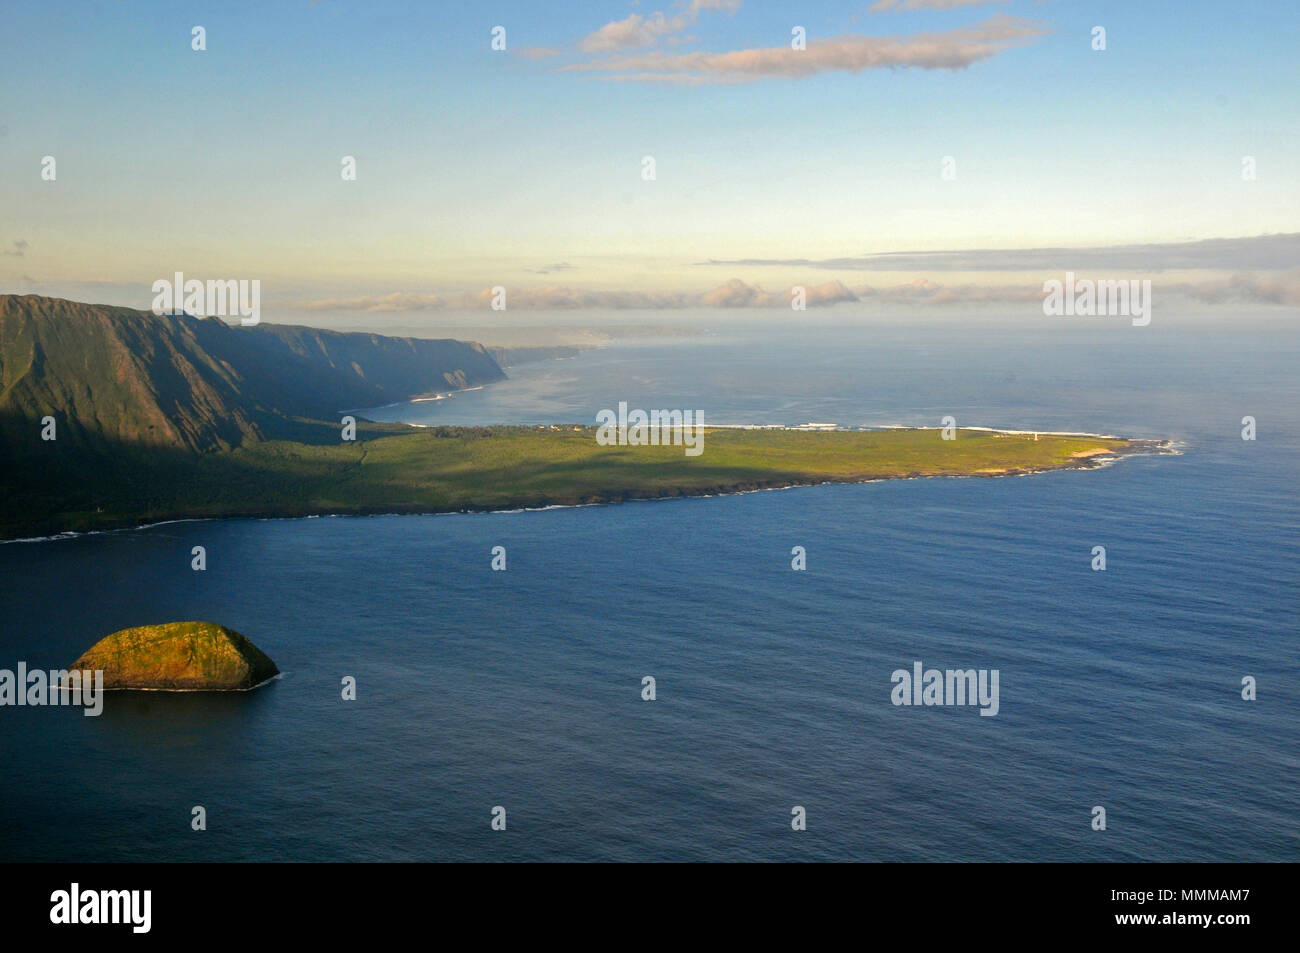 Aerial view of Kalaupapa Peninsula, former leprosy colony, Molokai, Hawaii, USA Stock Photo